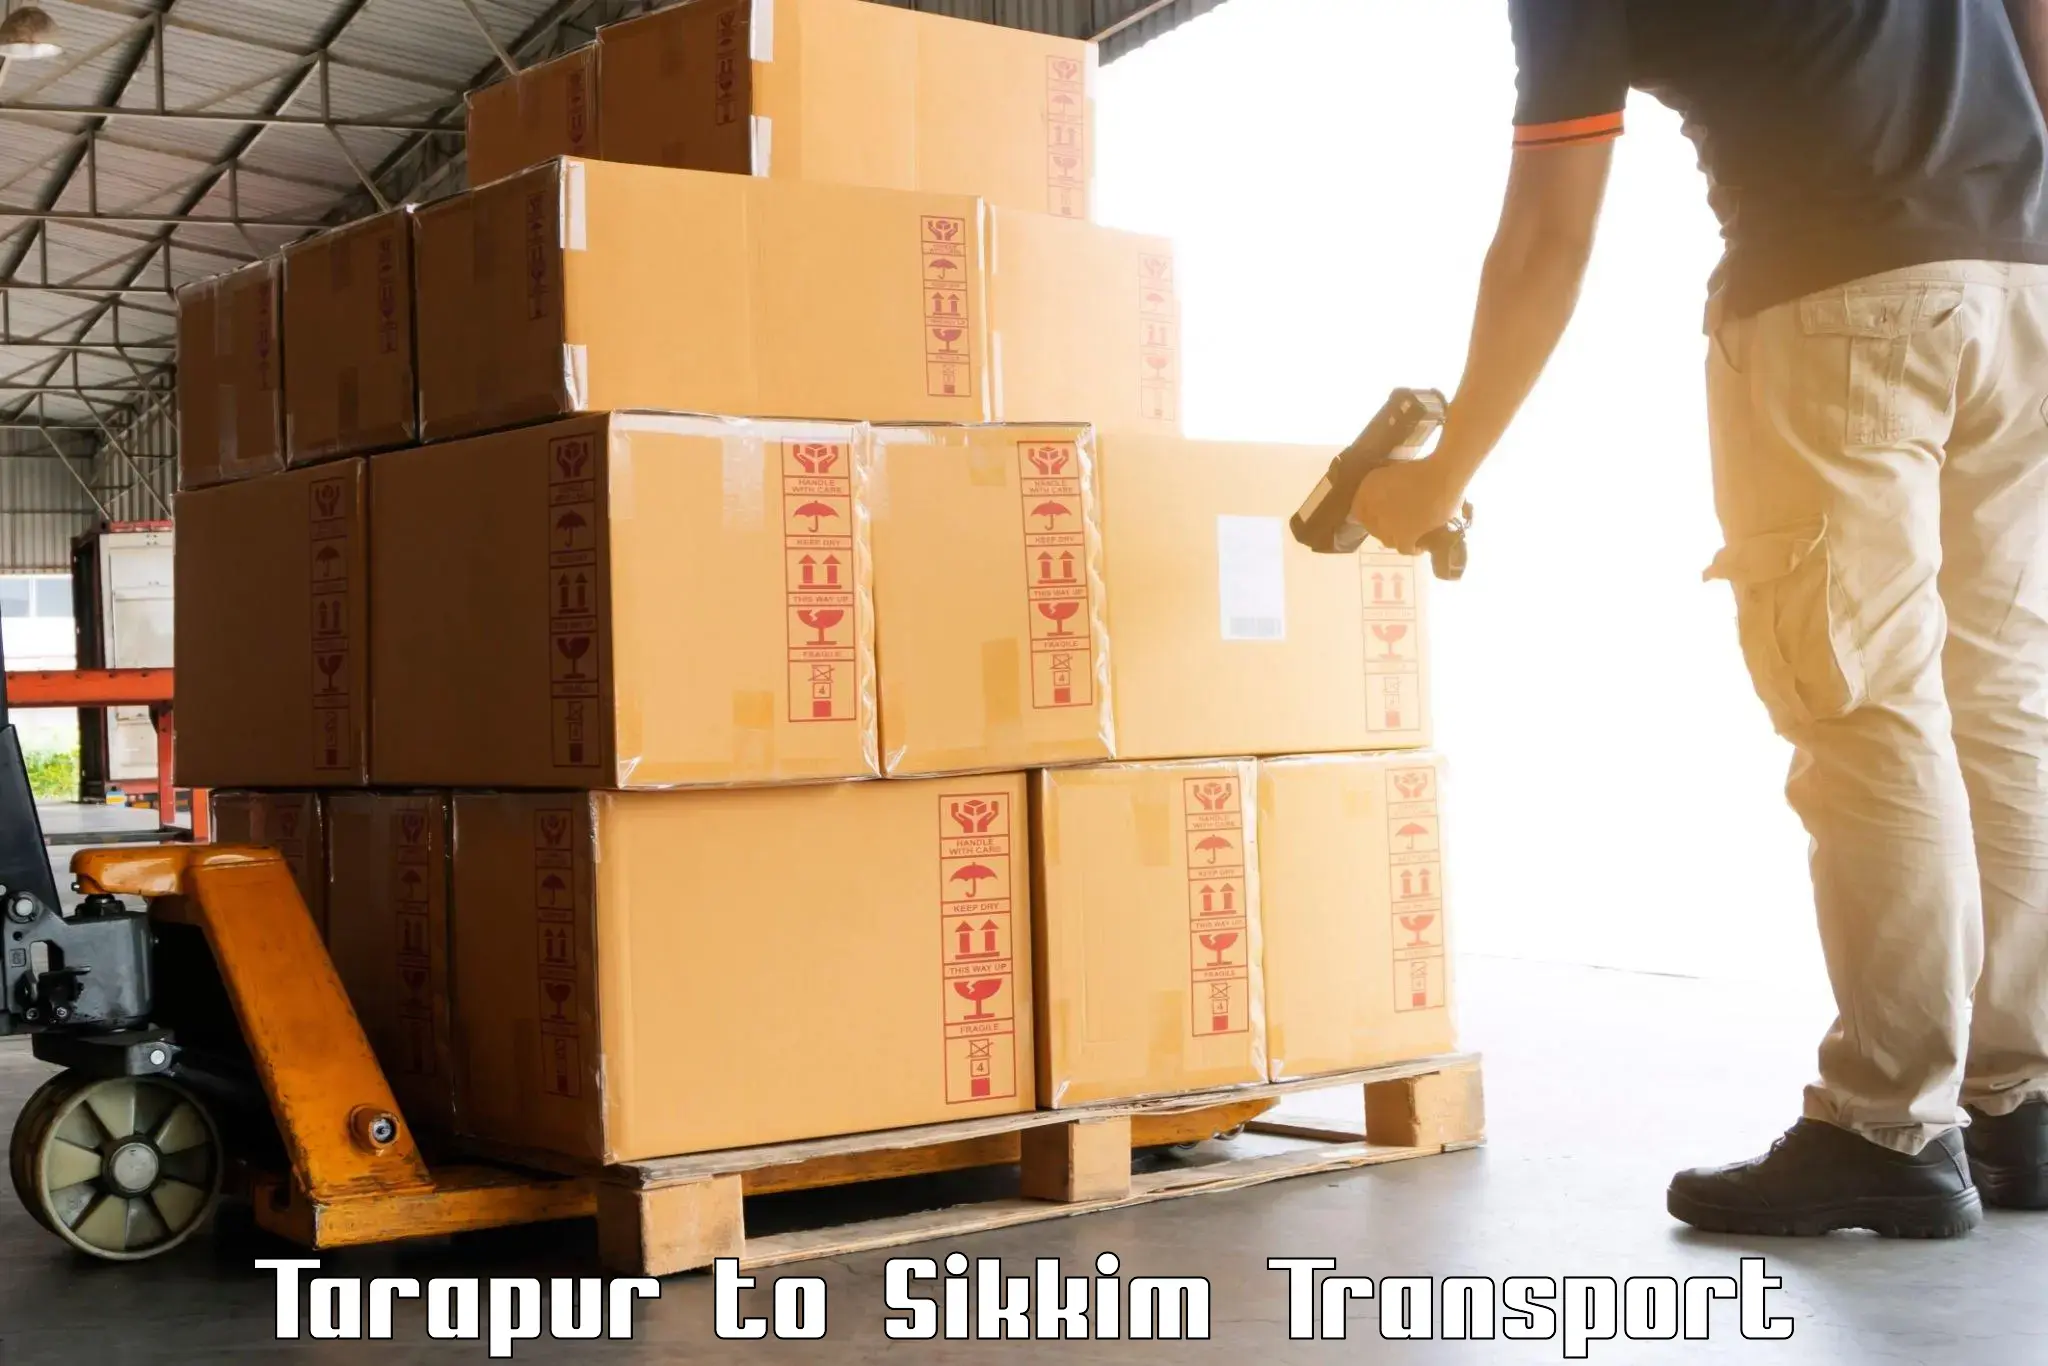 Container transport service Tarapur to Singtam